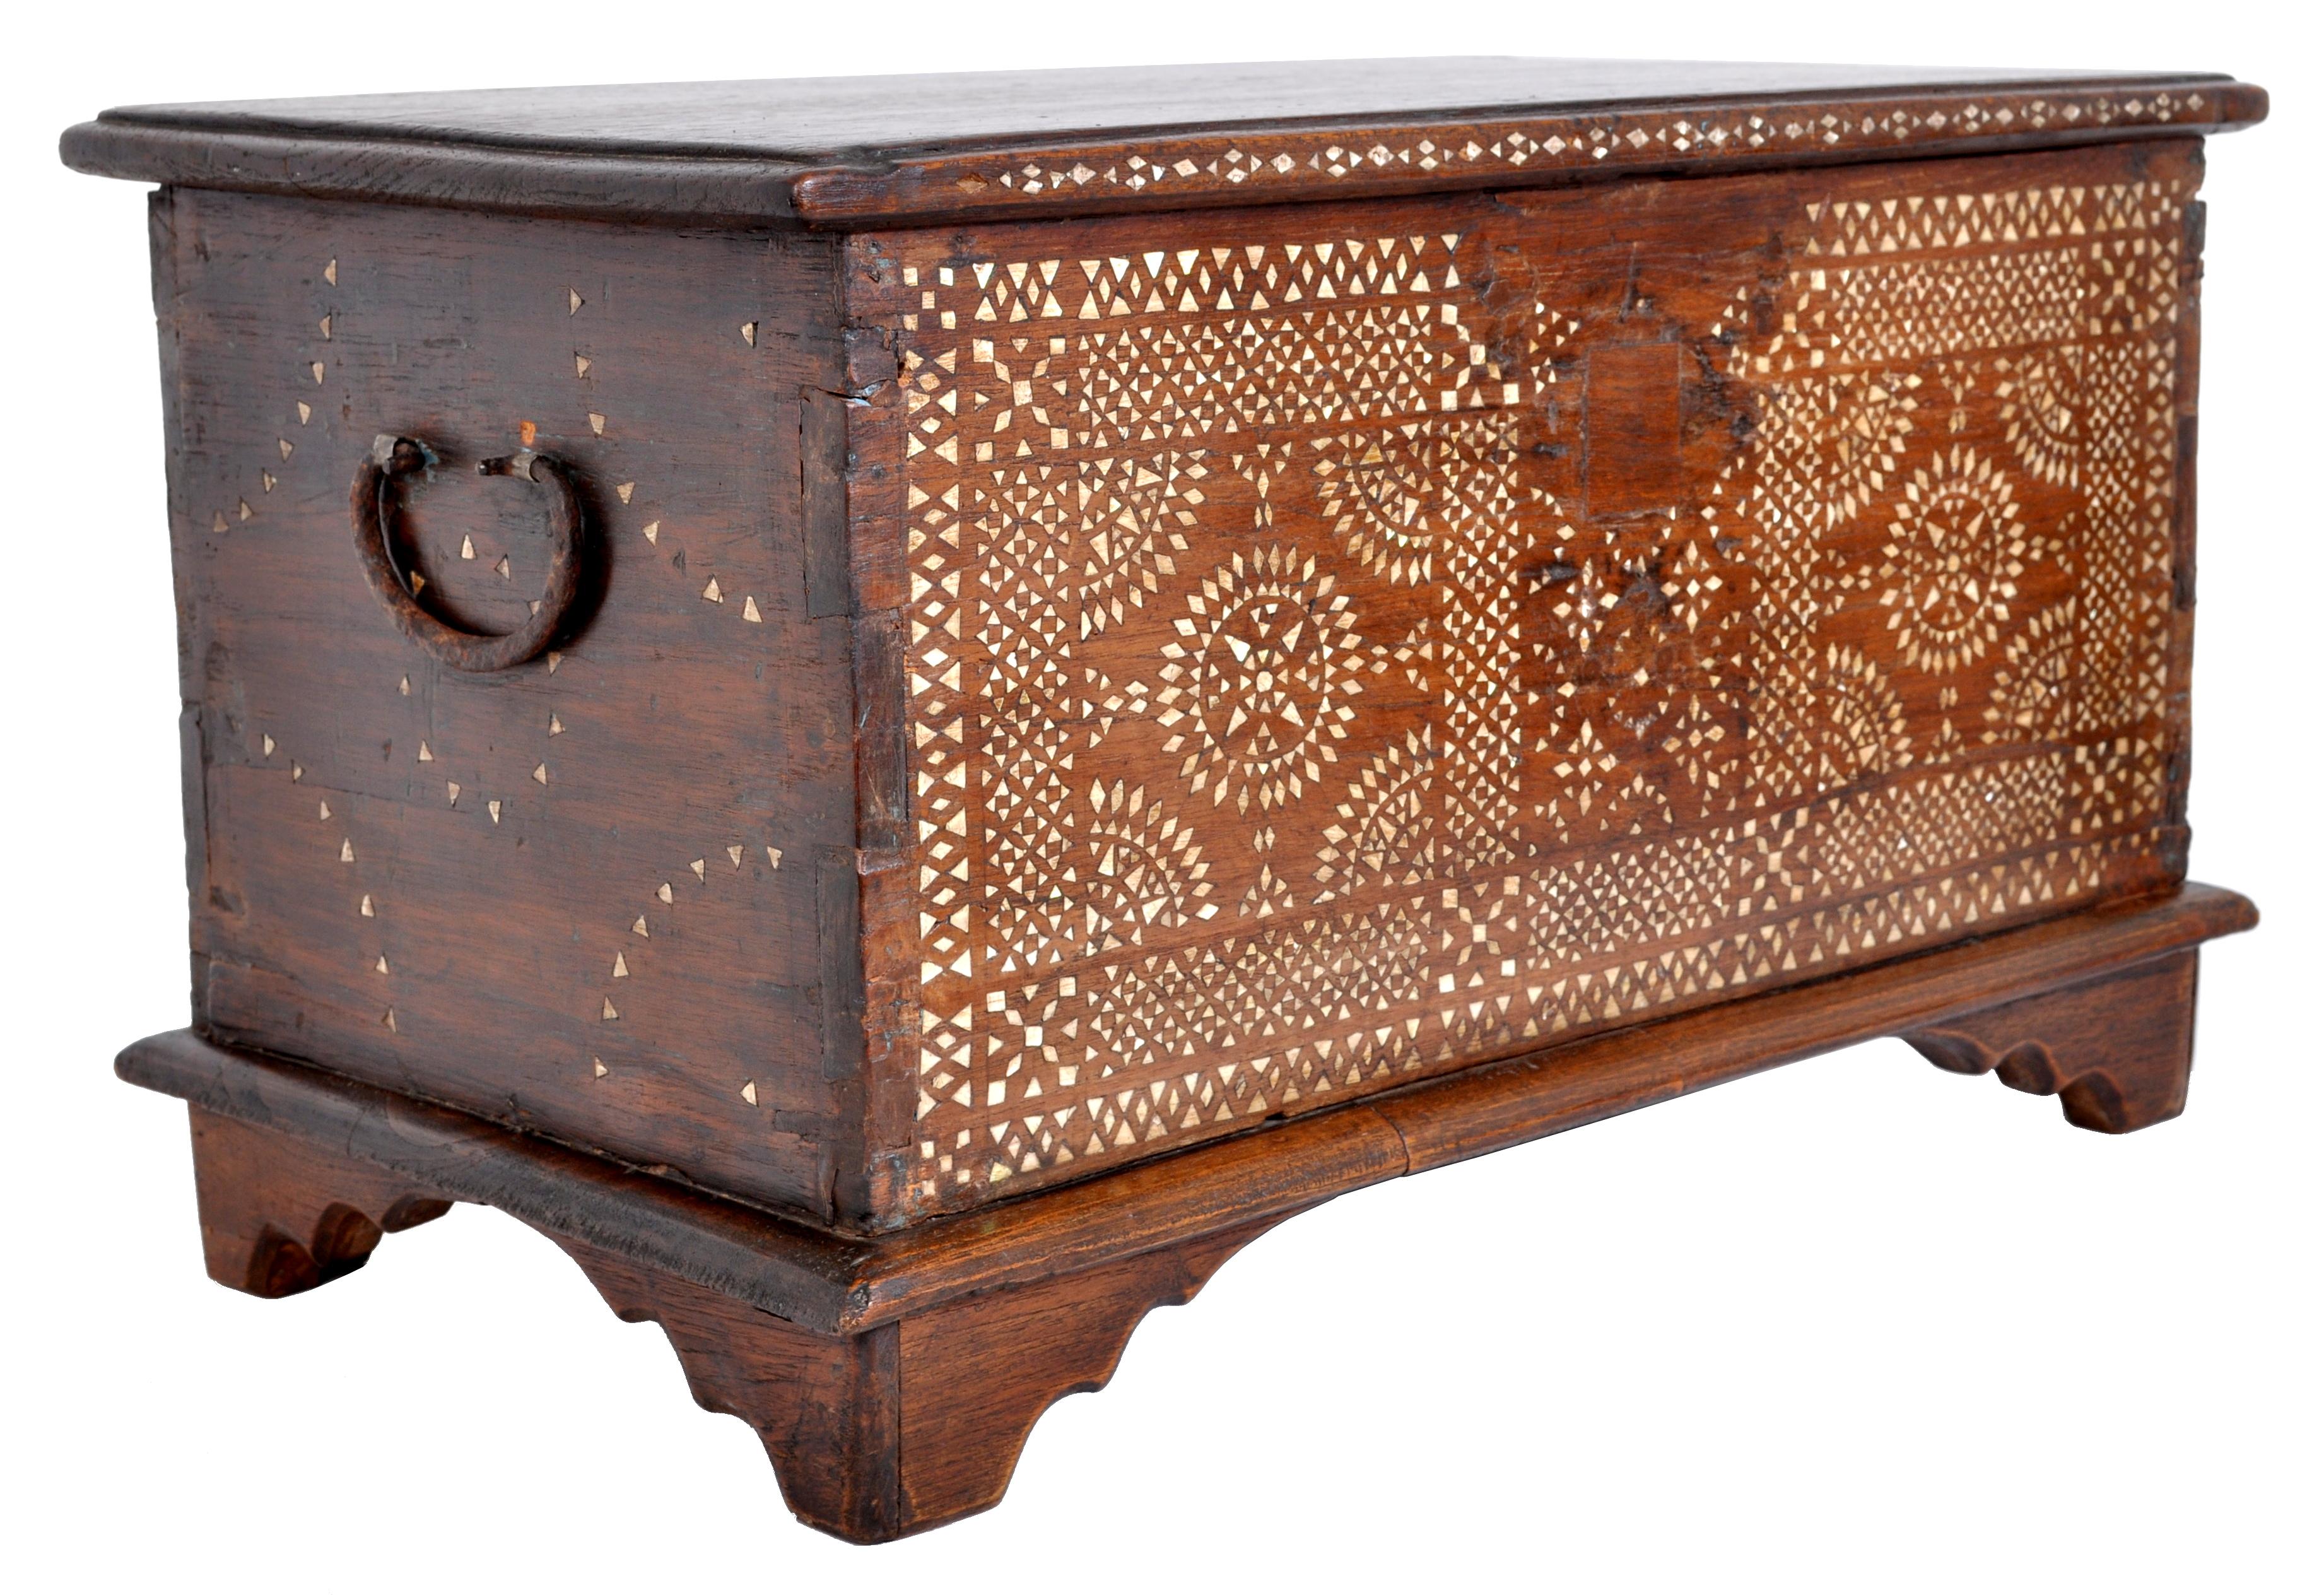 Une bonne boîte islamique marocaine ancienne incrustée de nacre:: vers 1900. Le cercueil a un couvercle à charnière qui renferme une zone de stockage avec une caisse à couvercle unique. La malle est abondamment incrustée de nacre dans un motif